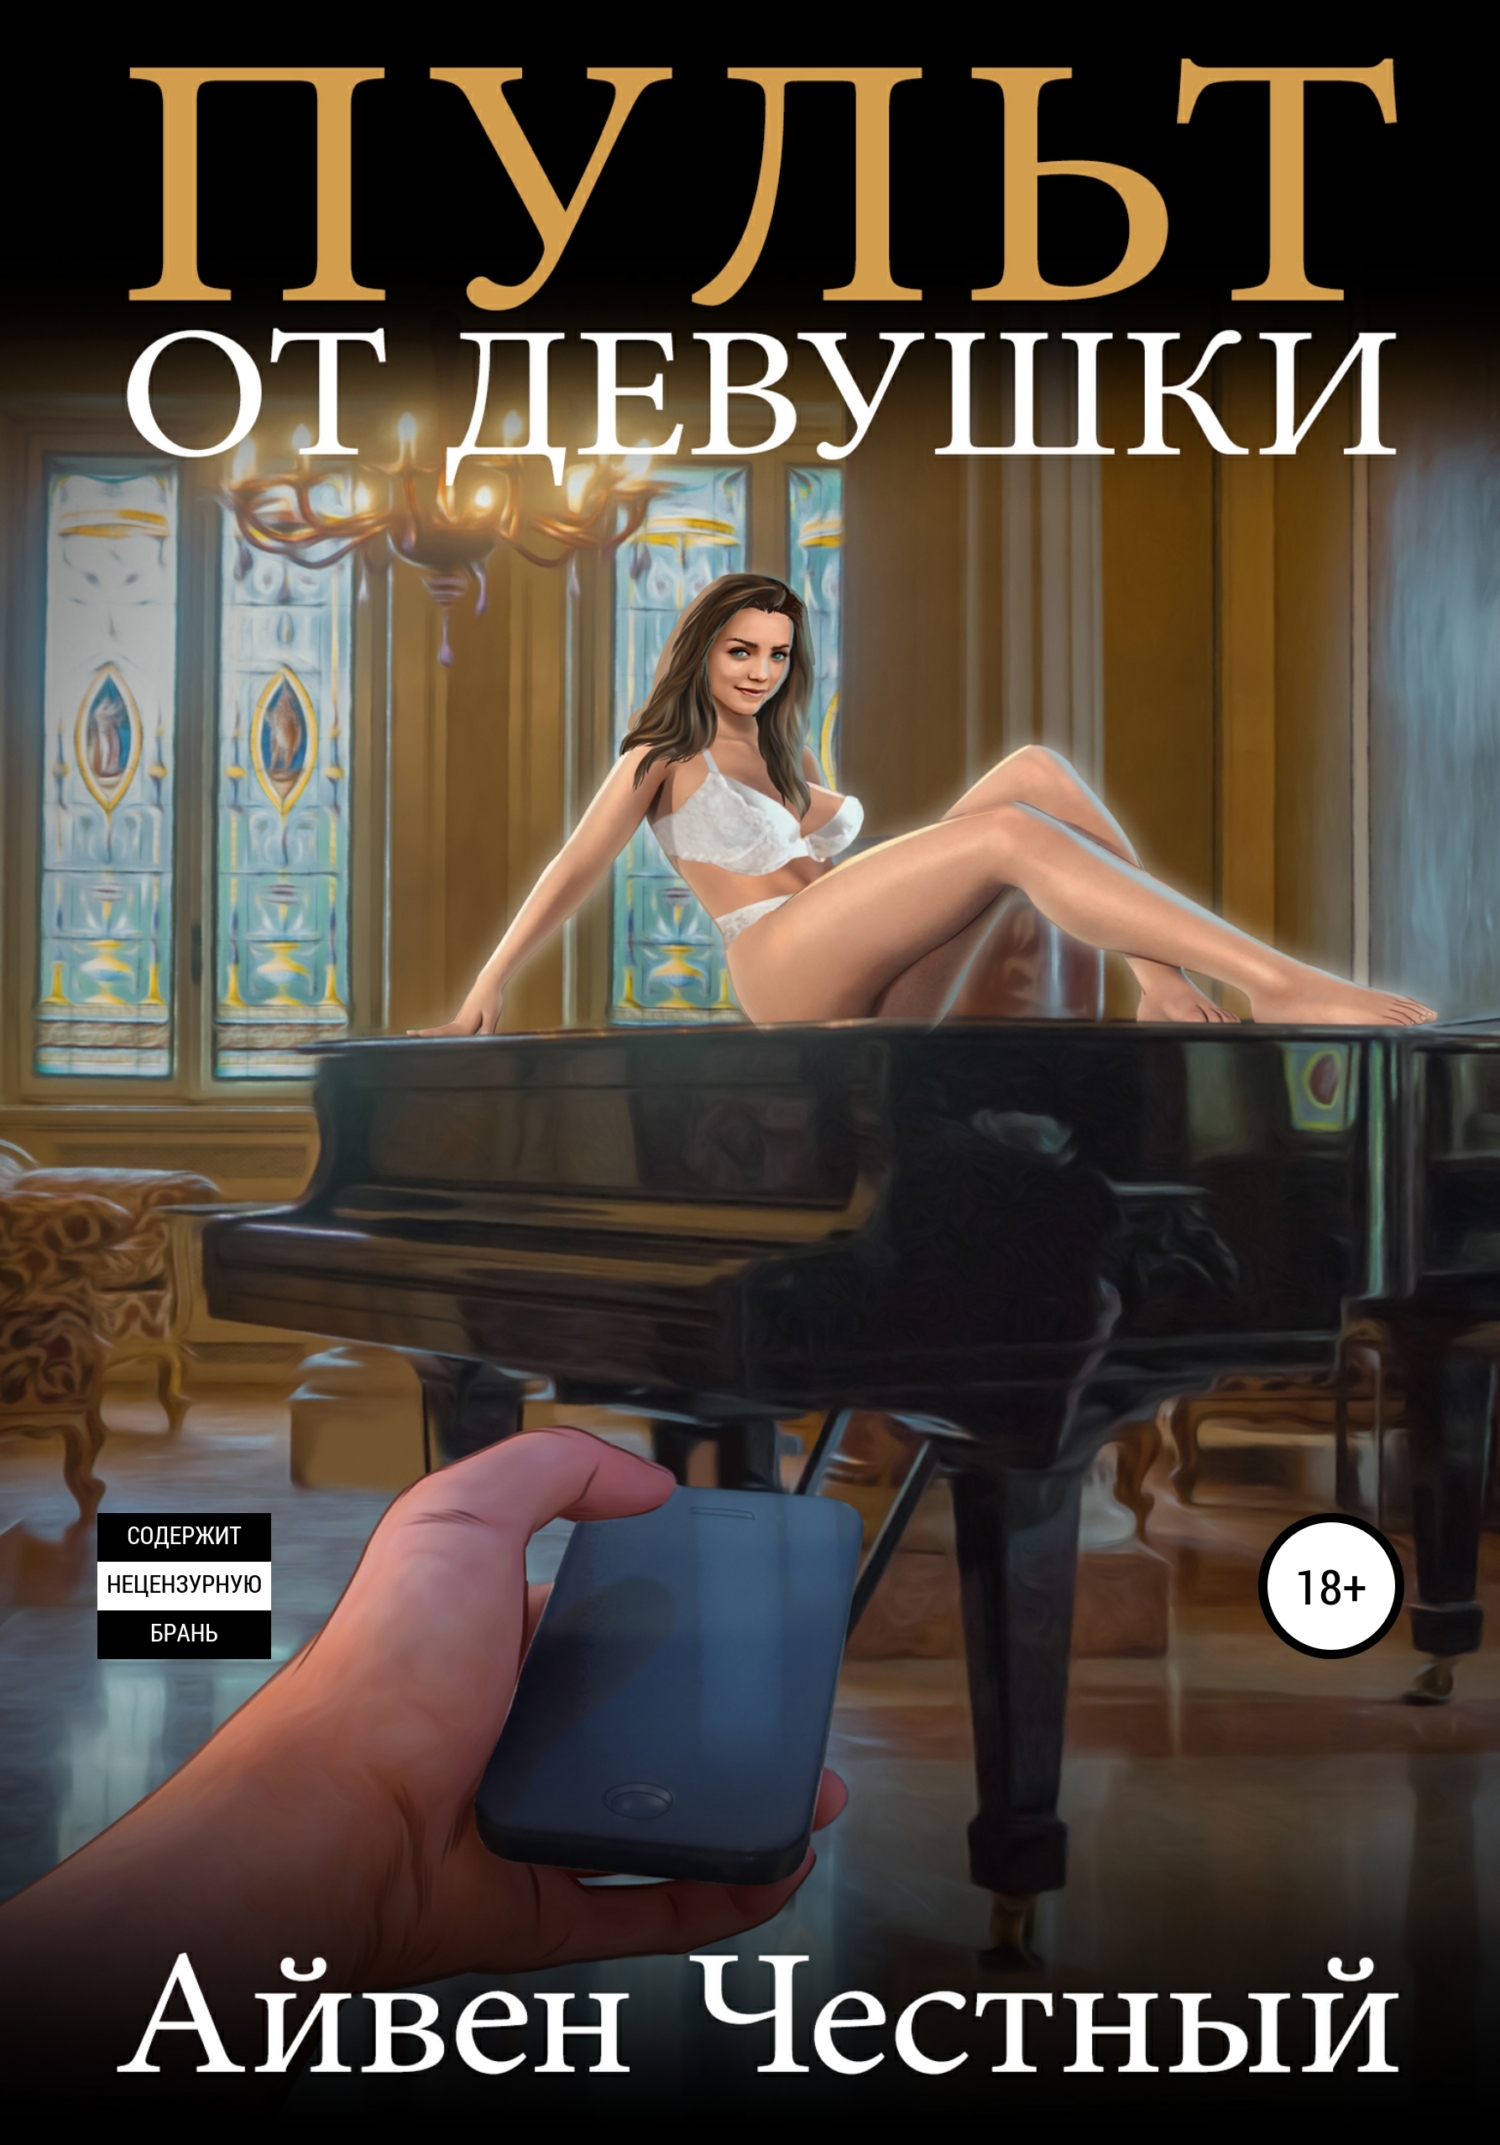 Клик: Пульт управления сексом (порно фильм с русским переводом)